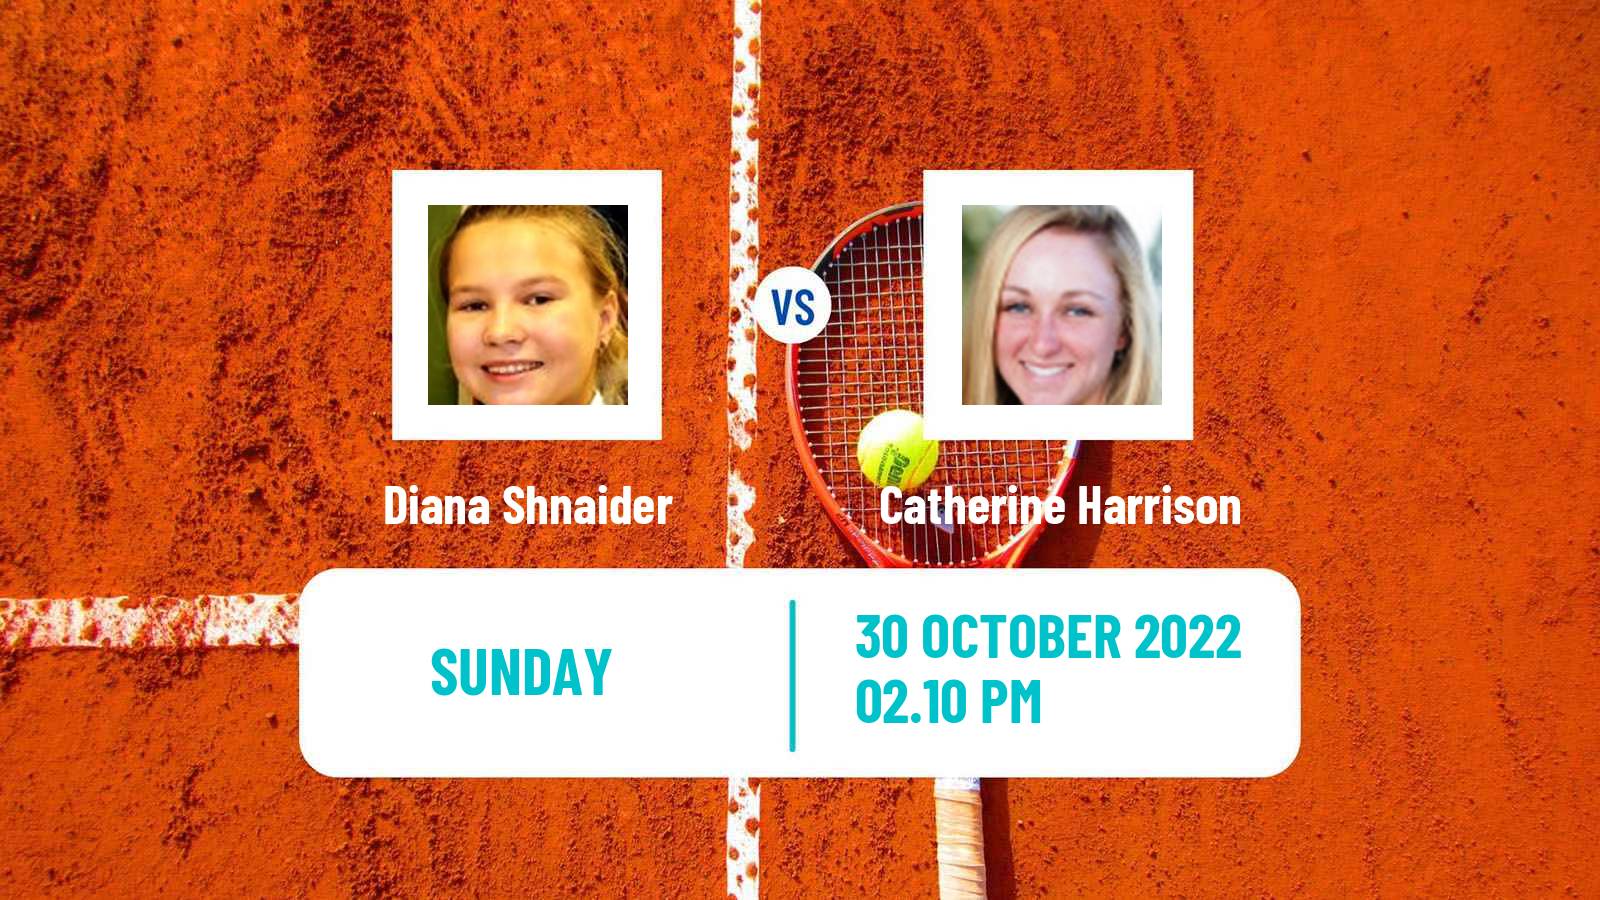 Tennis ATP Challenger Diana Shnaider - Catherine Harrison